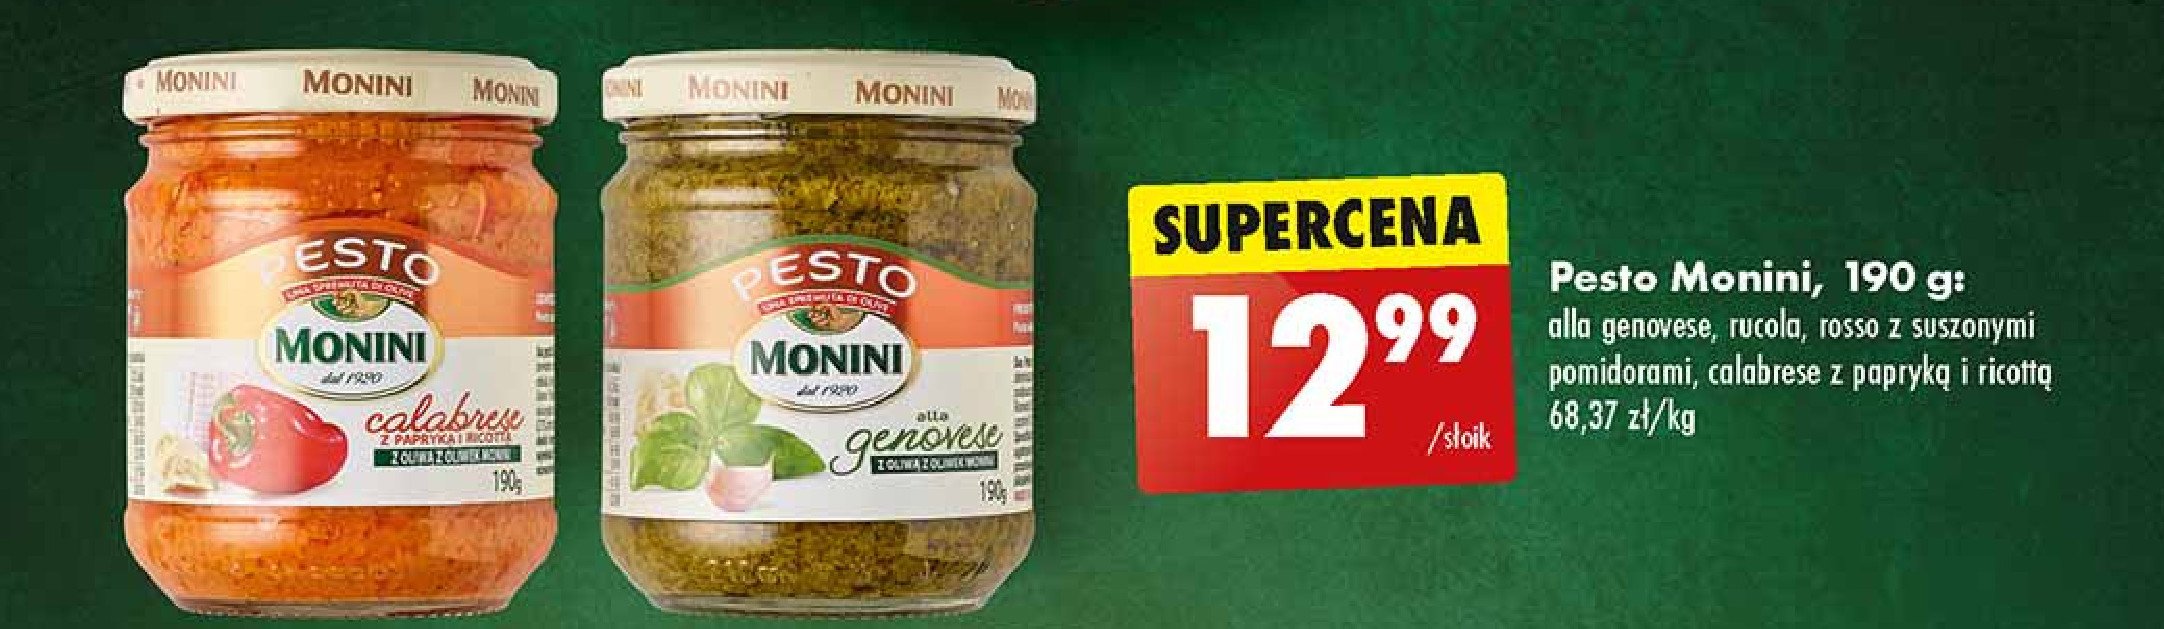 Pesto genovese Monini promocja